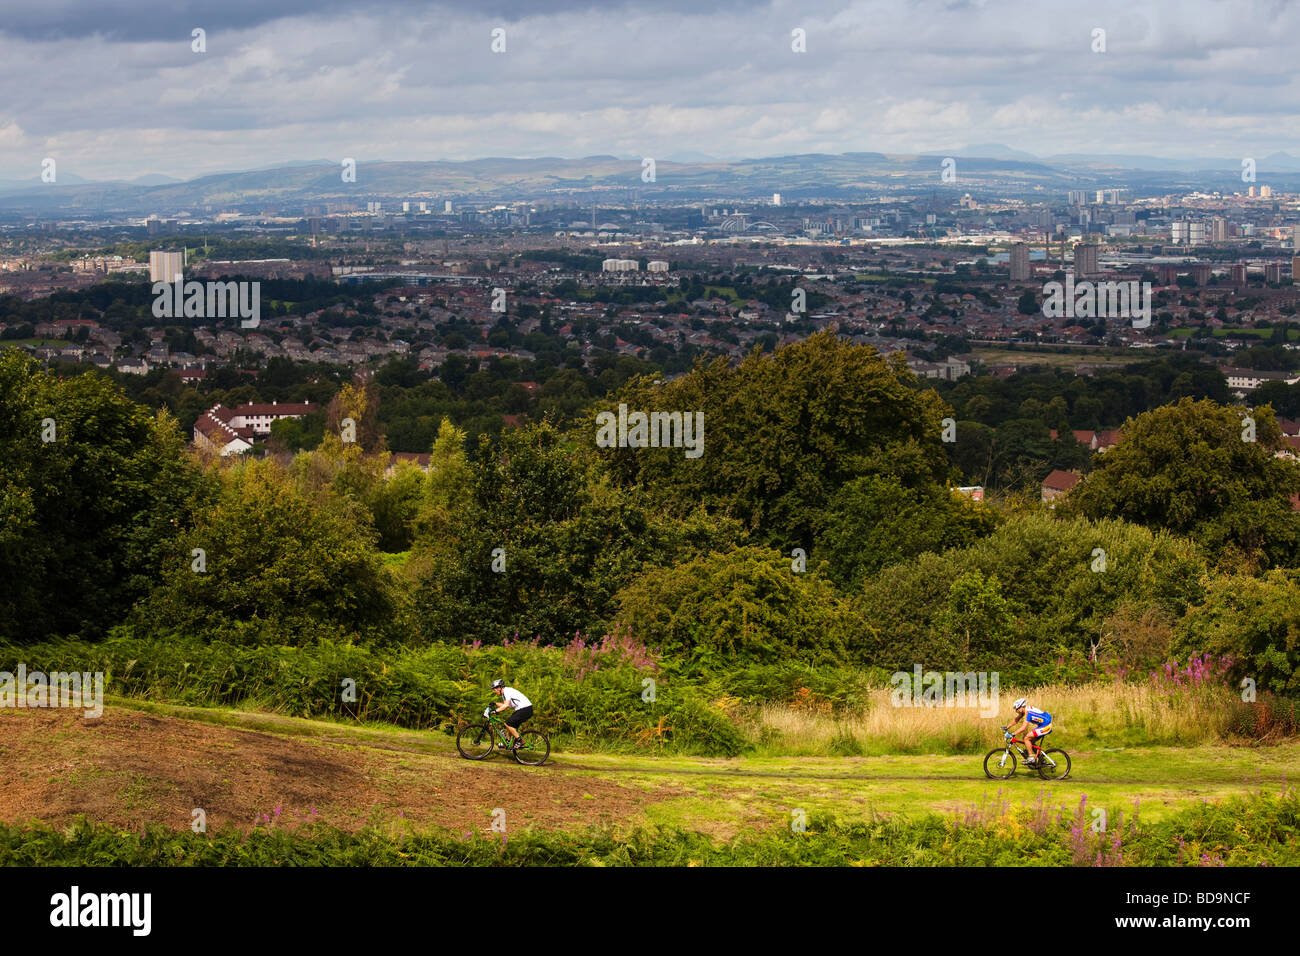 Mountain-Bike-Fahrer Rennen auf einem Langlauf-Event statt auf catkin Braes Glasgow, Schottland, Großbritannien, UK Stockfoto